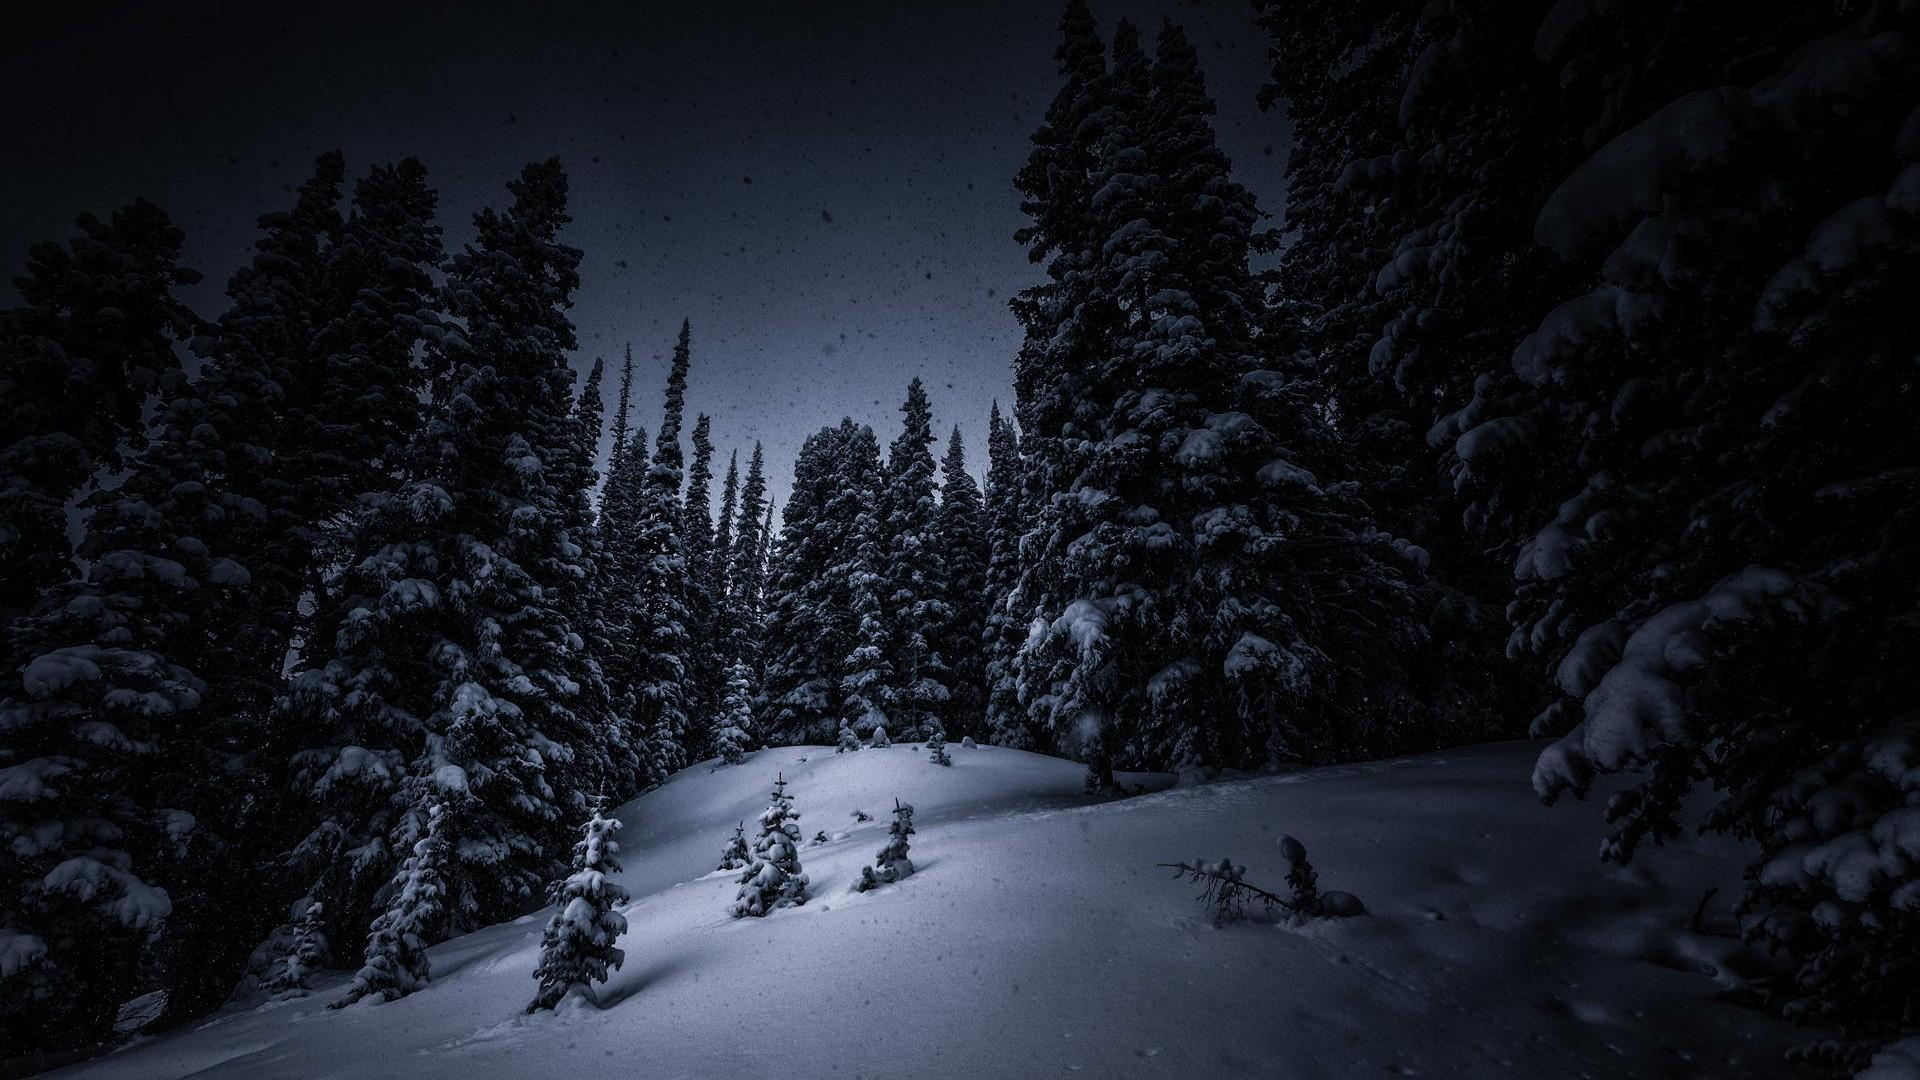 Download Wallpaper snow winter spruce night dark darkness